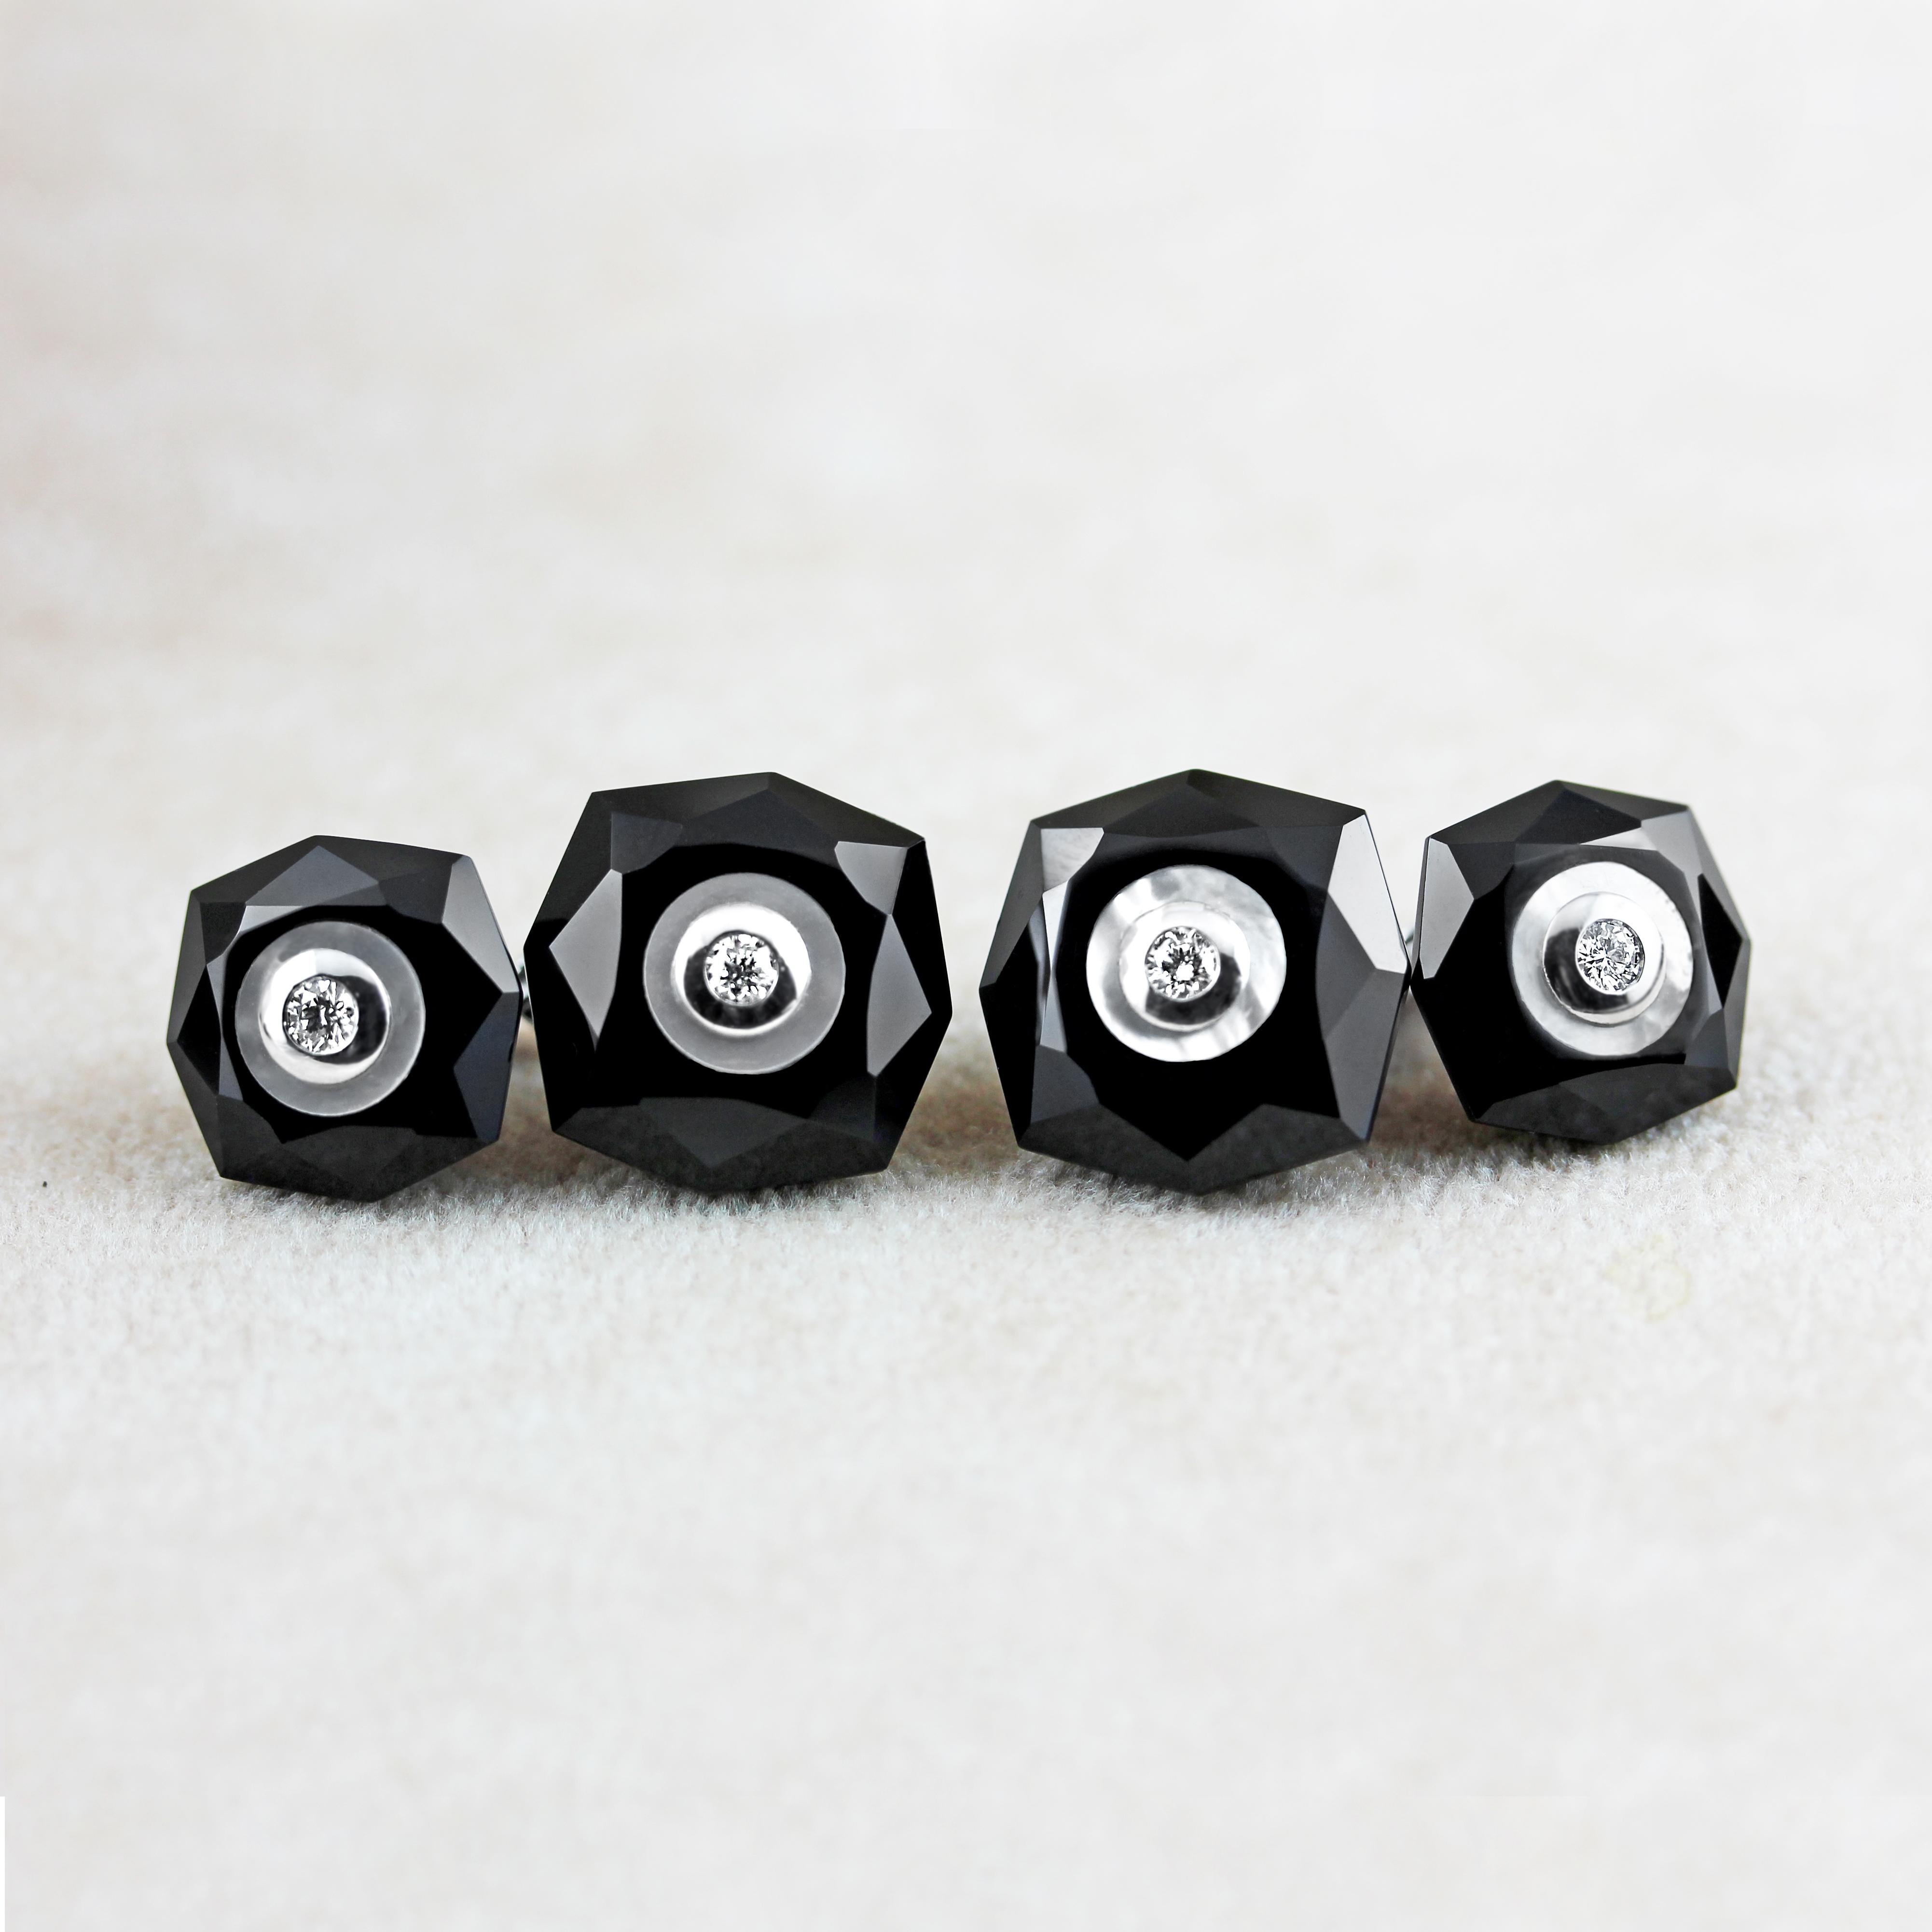 Le contraste saisissant entre la couleur de l'onyx noir et le délicat chatoiement de la nacre donne du caractère à ces boutons de manchette exquis, dont la face avant et l'anneau ont la forme d'un octogone à multiples facettes. 
Le centre de chaque